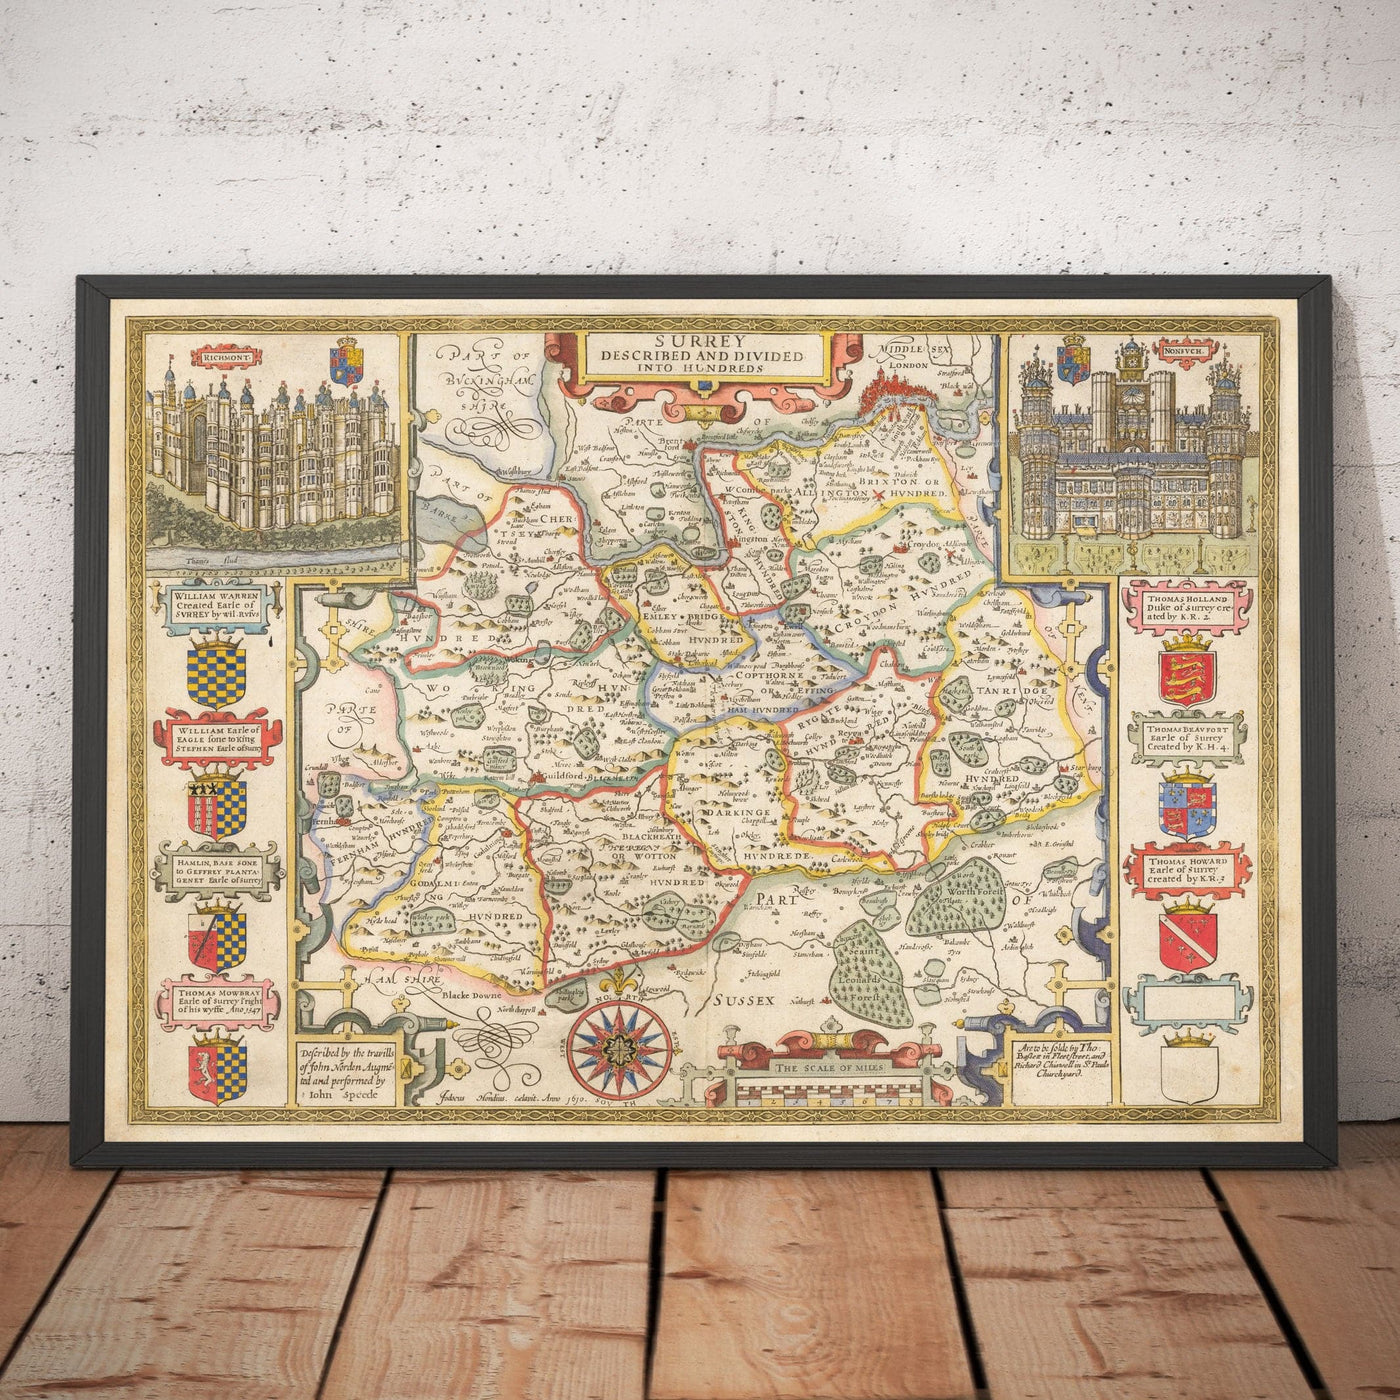 Ancienne carte du Surrey 1611 par John Speed - Woking, Guildford, Croydon, Richmond, Esher, Cobham, Sutton, Morden